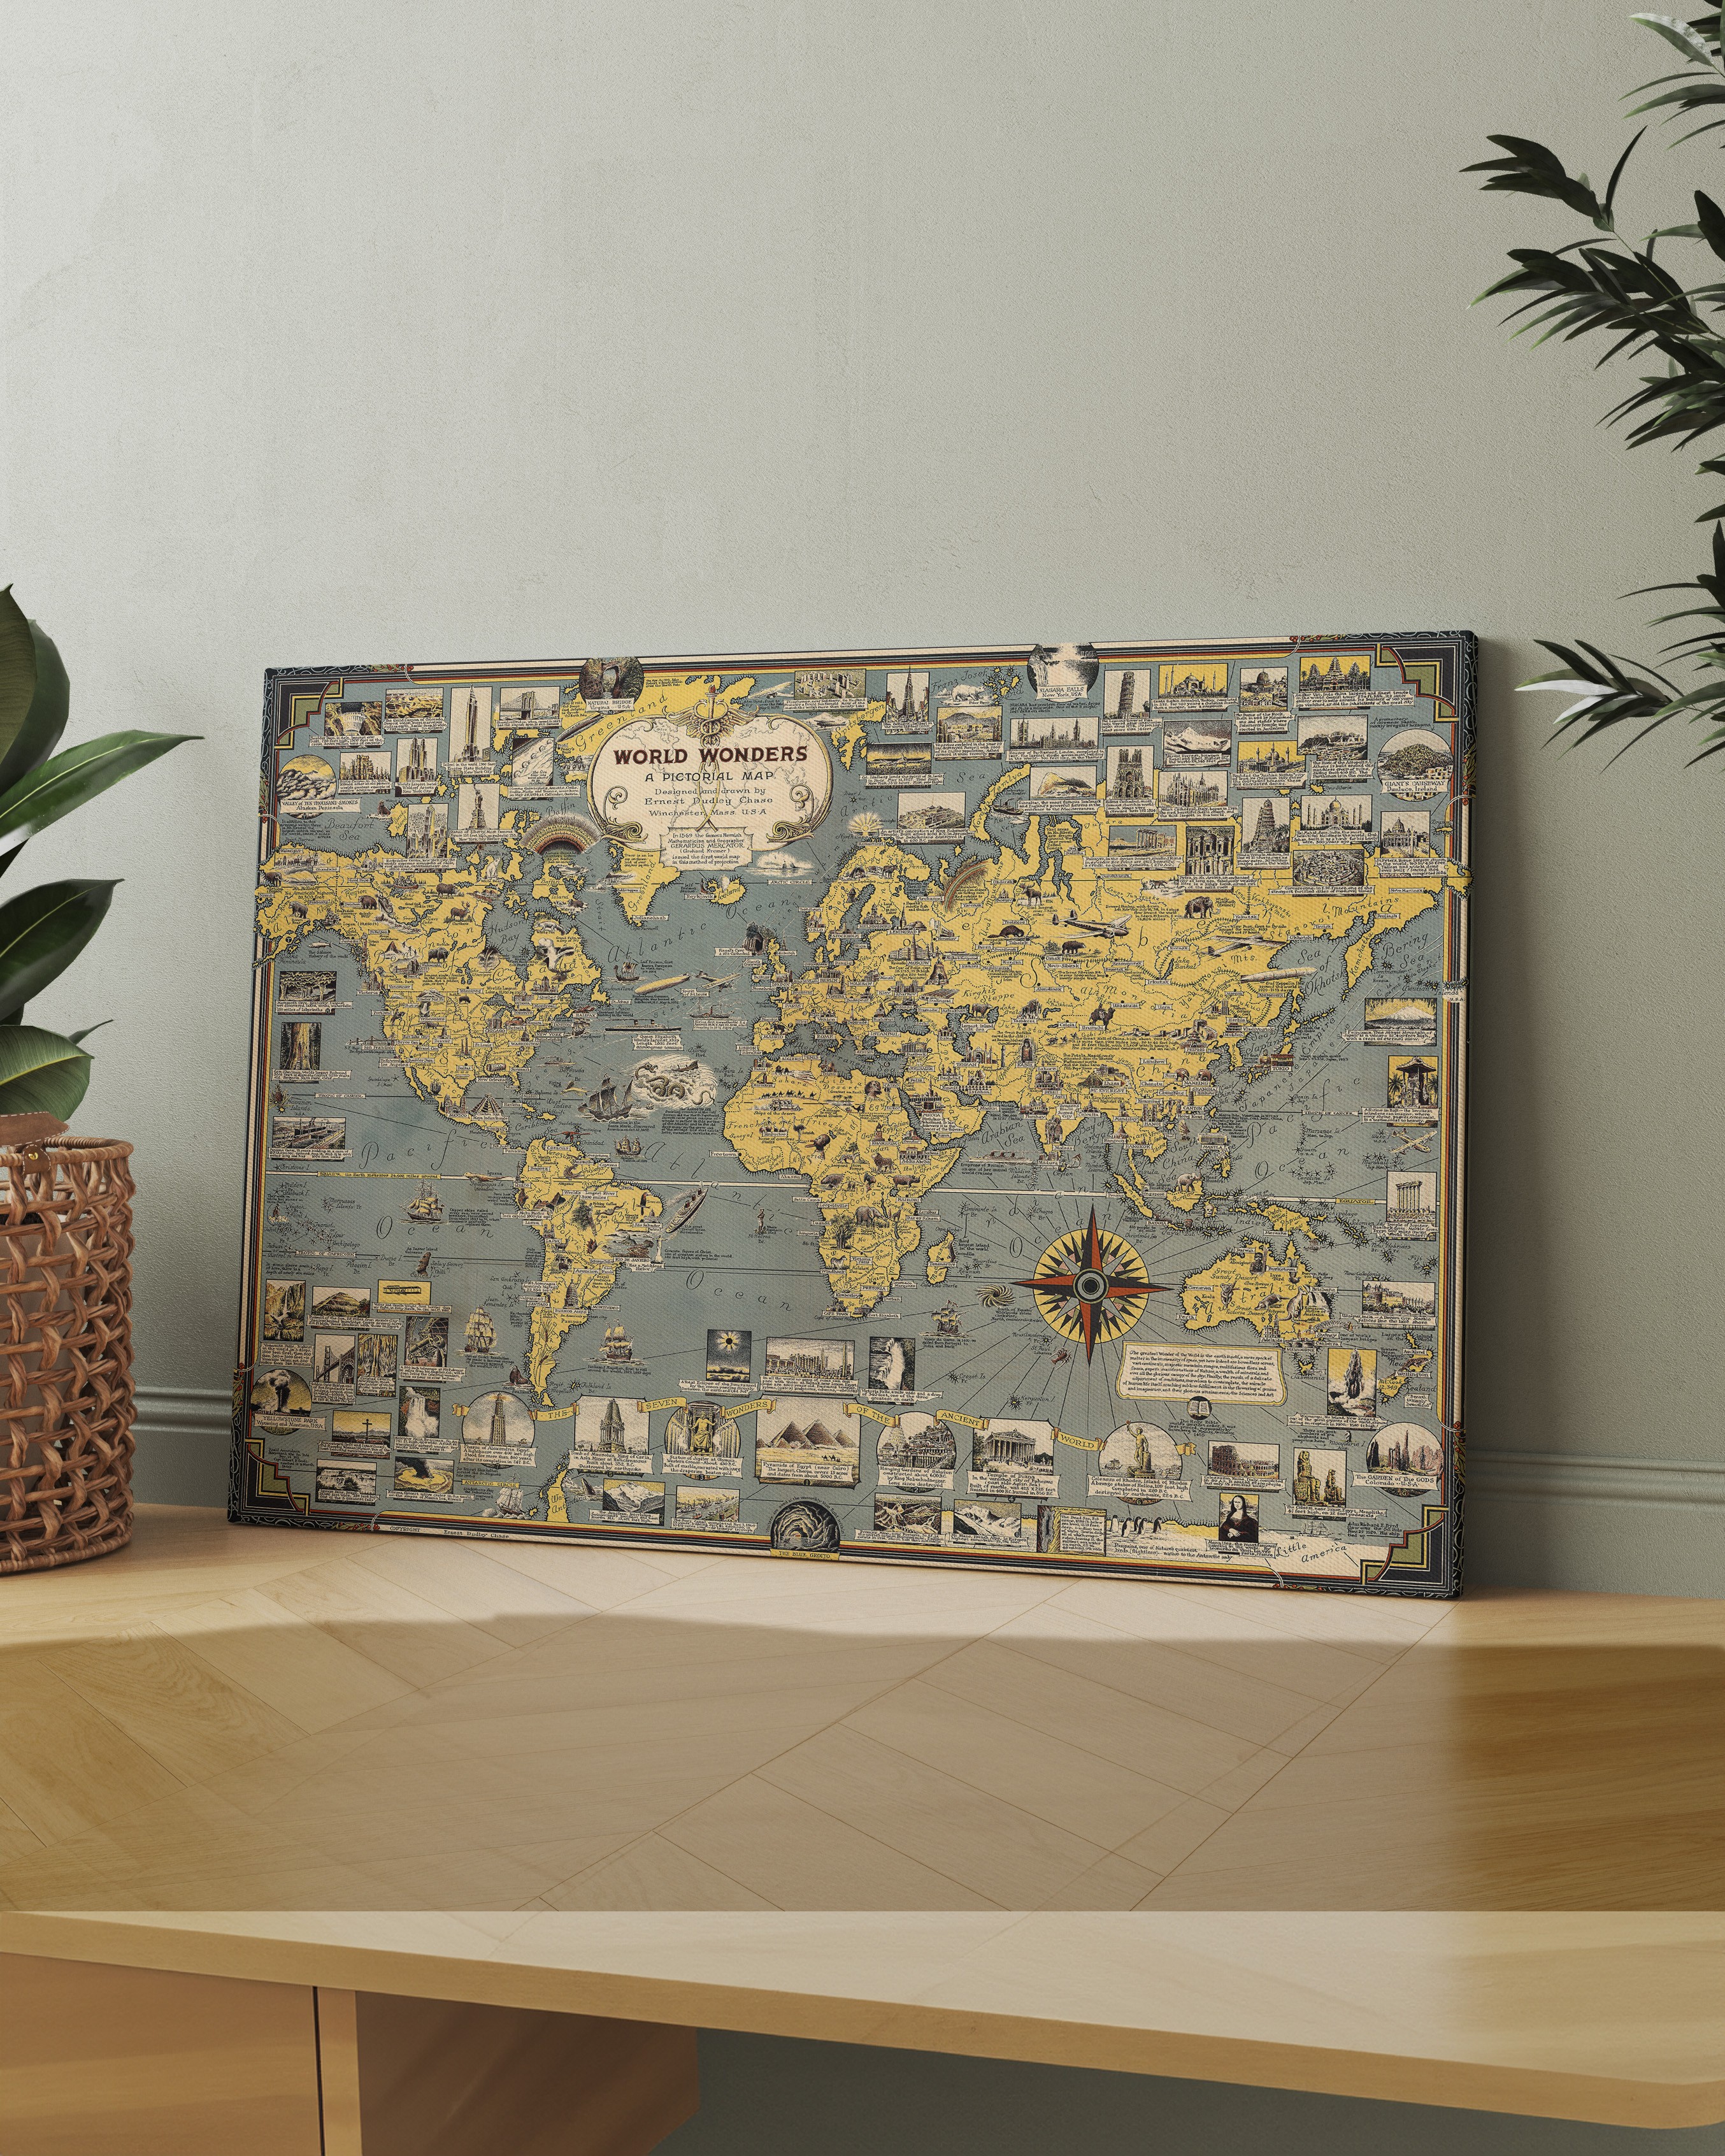 Dünya Harikaları Harita Kanvas Tablo (World Wonders Map) - Ernest Dudley